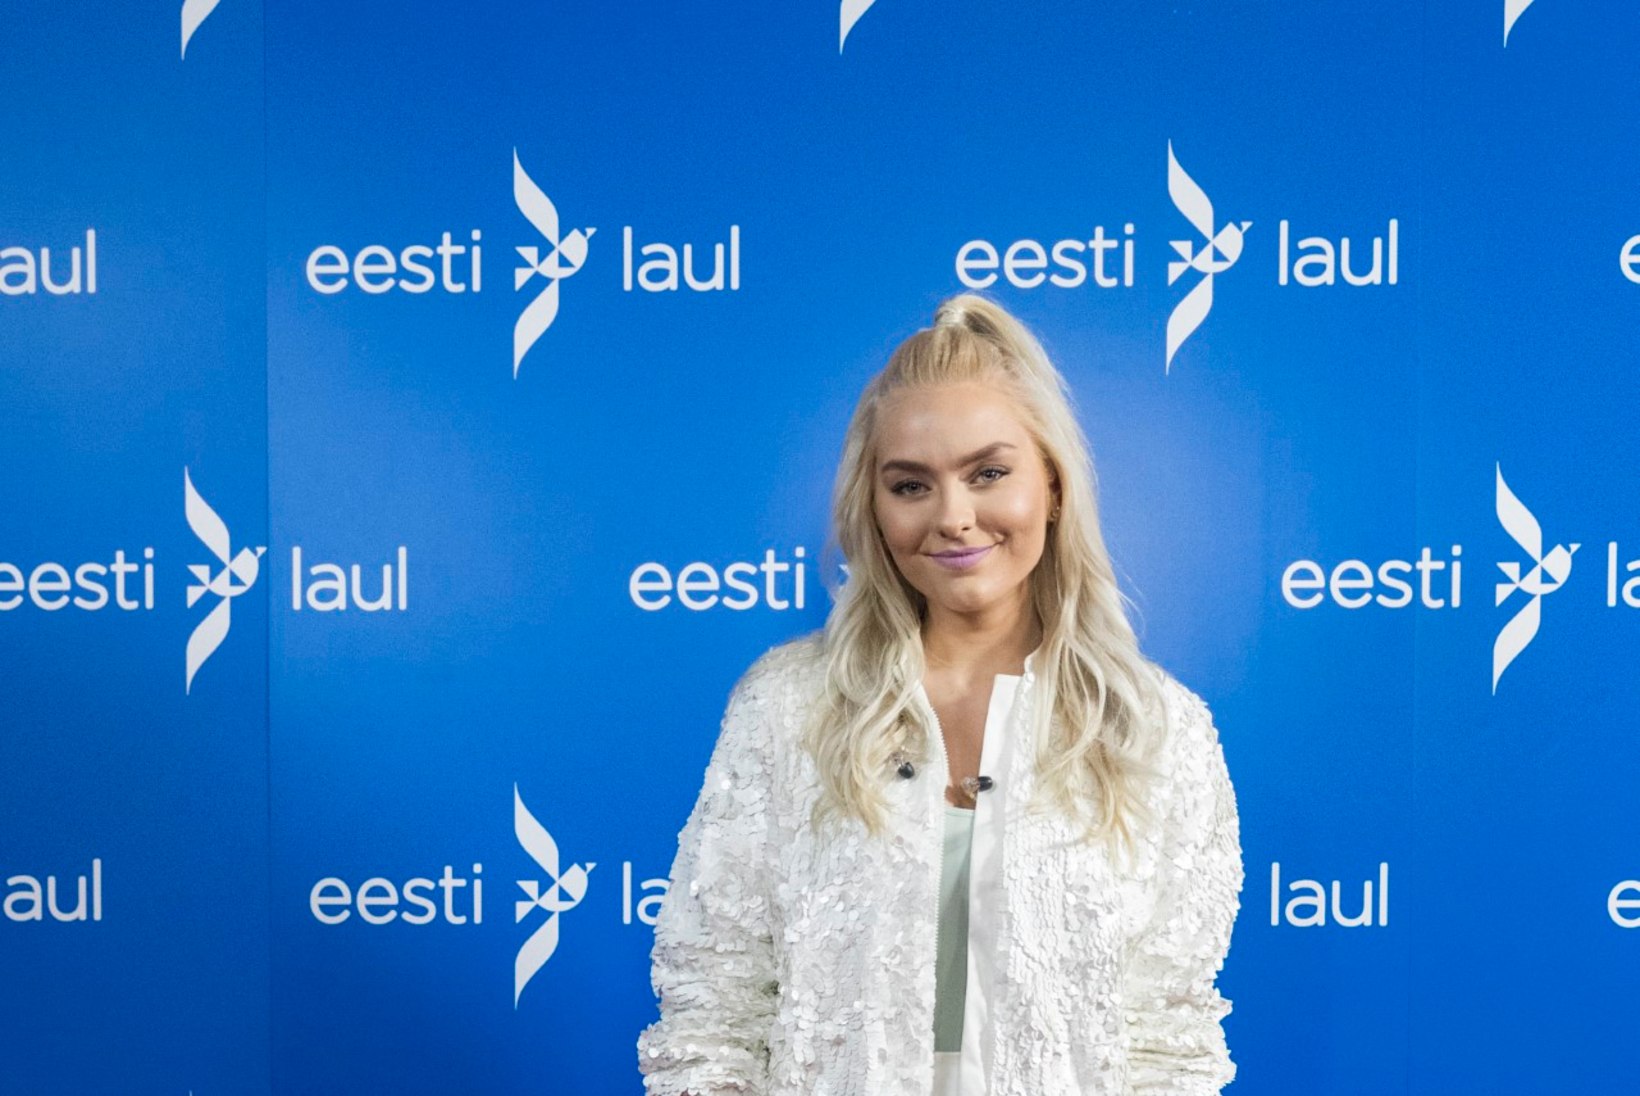 ÕHTULEHE VIDEOANKEET | "Eesti laulu" noor kaunitar Ariadne: "Tahan pärast keskkooli kosmeetikuks õppima minna!"